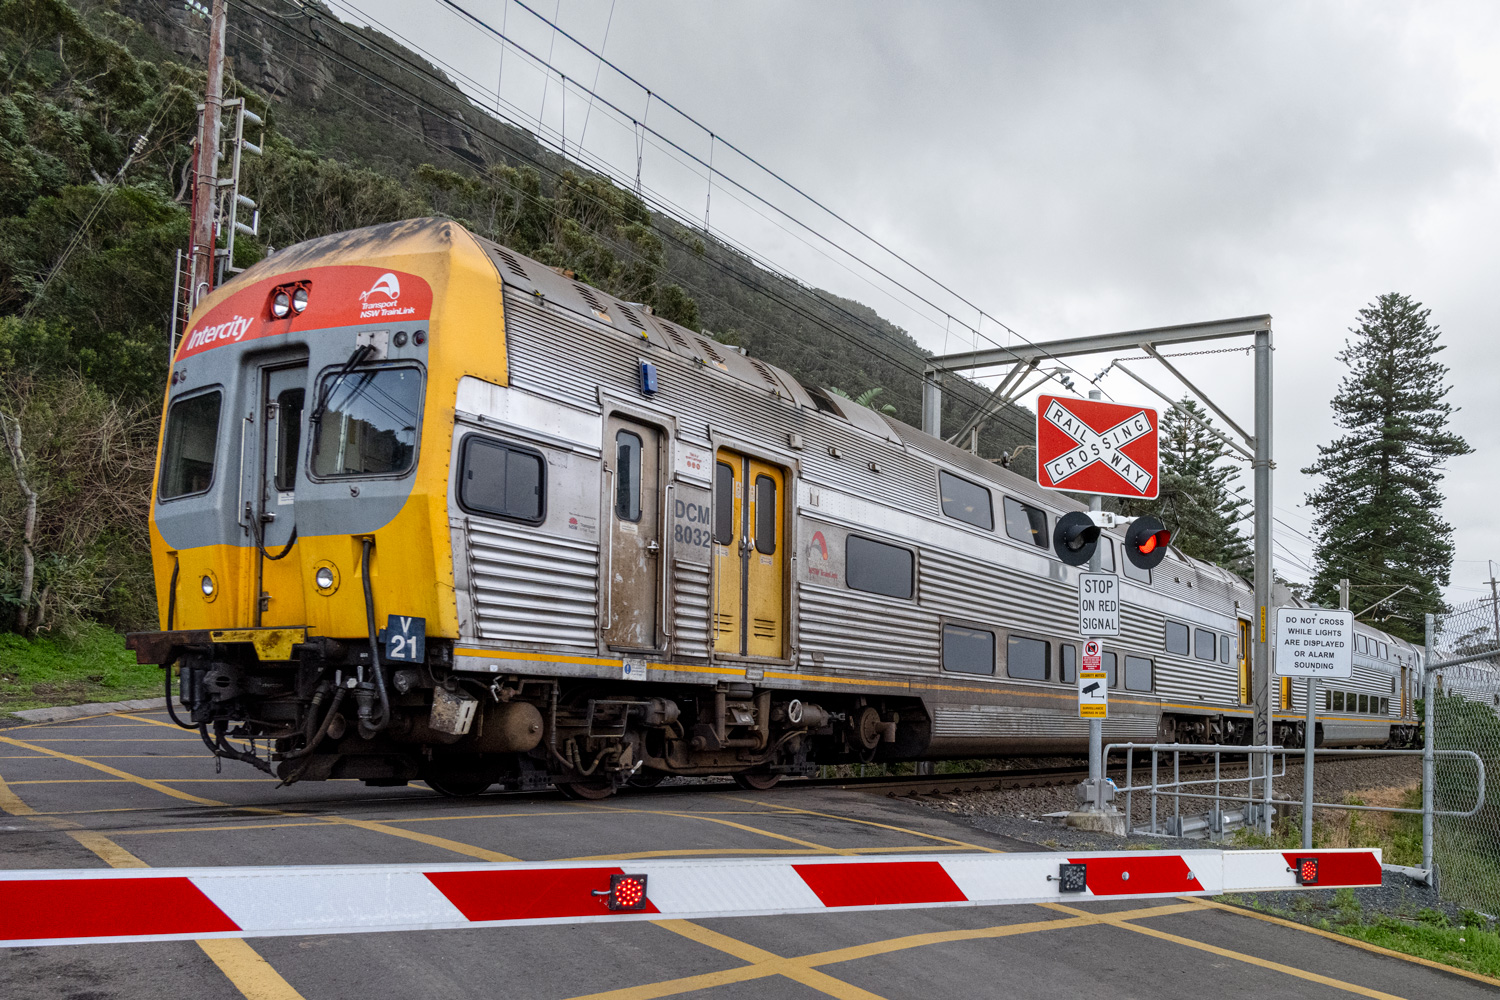 V Set train at Clifton, NSW, Australia.